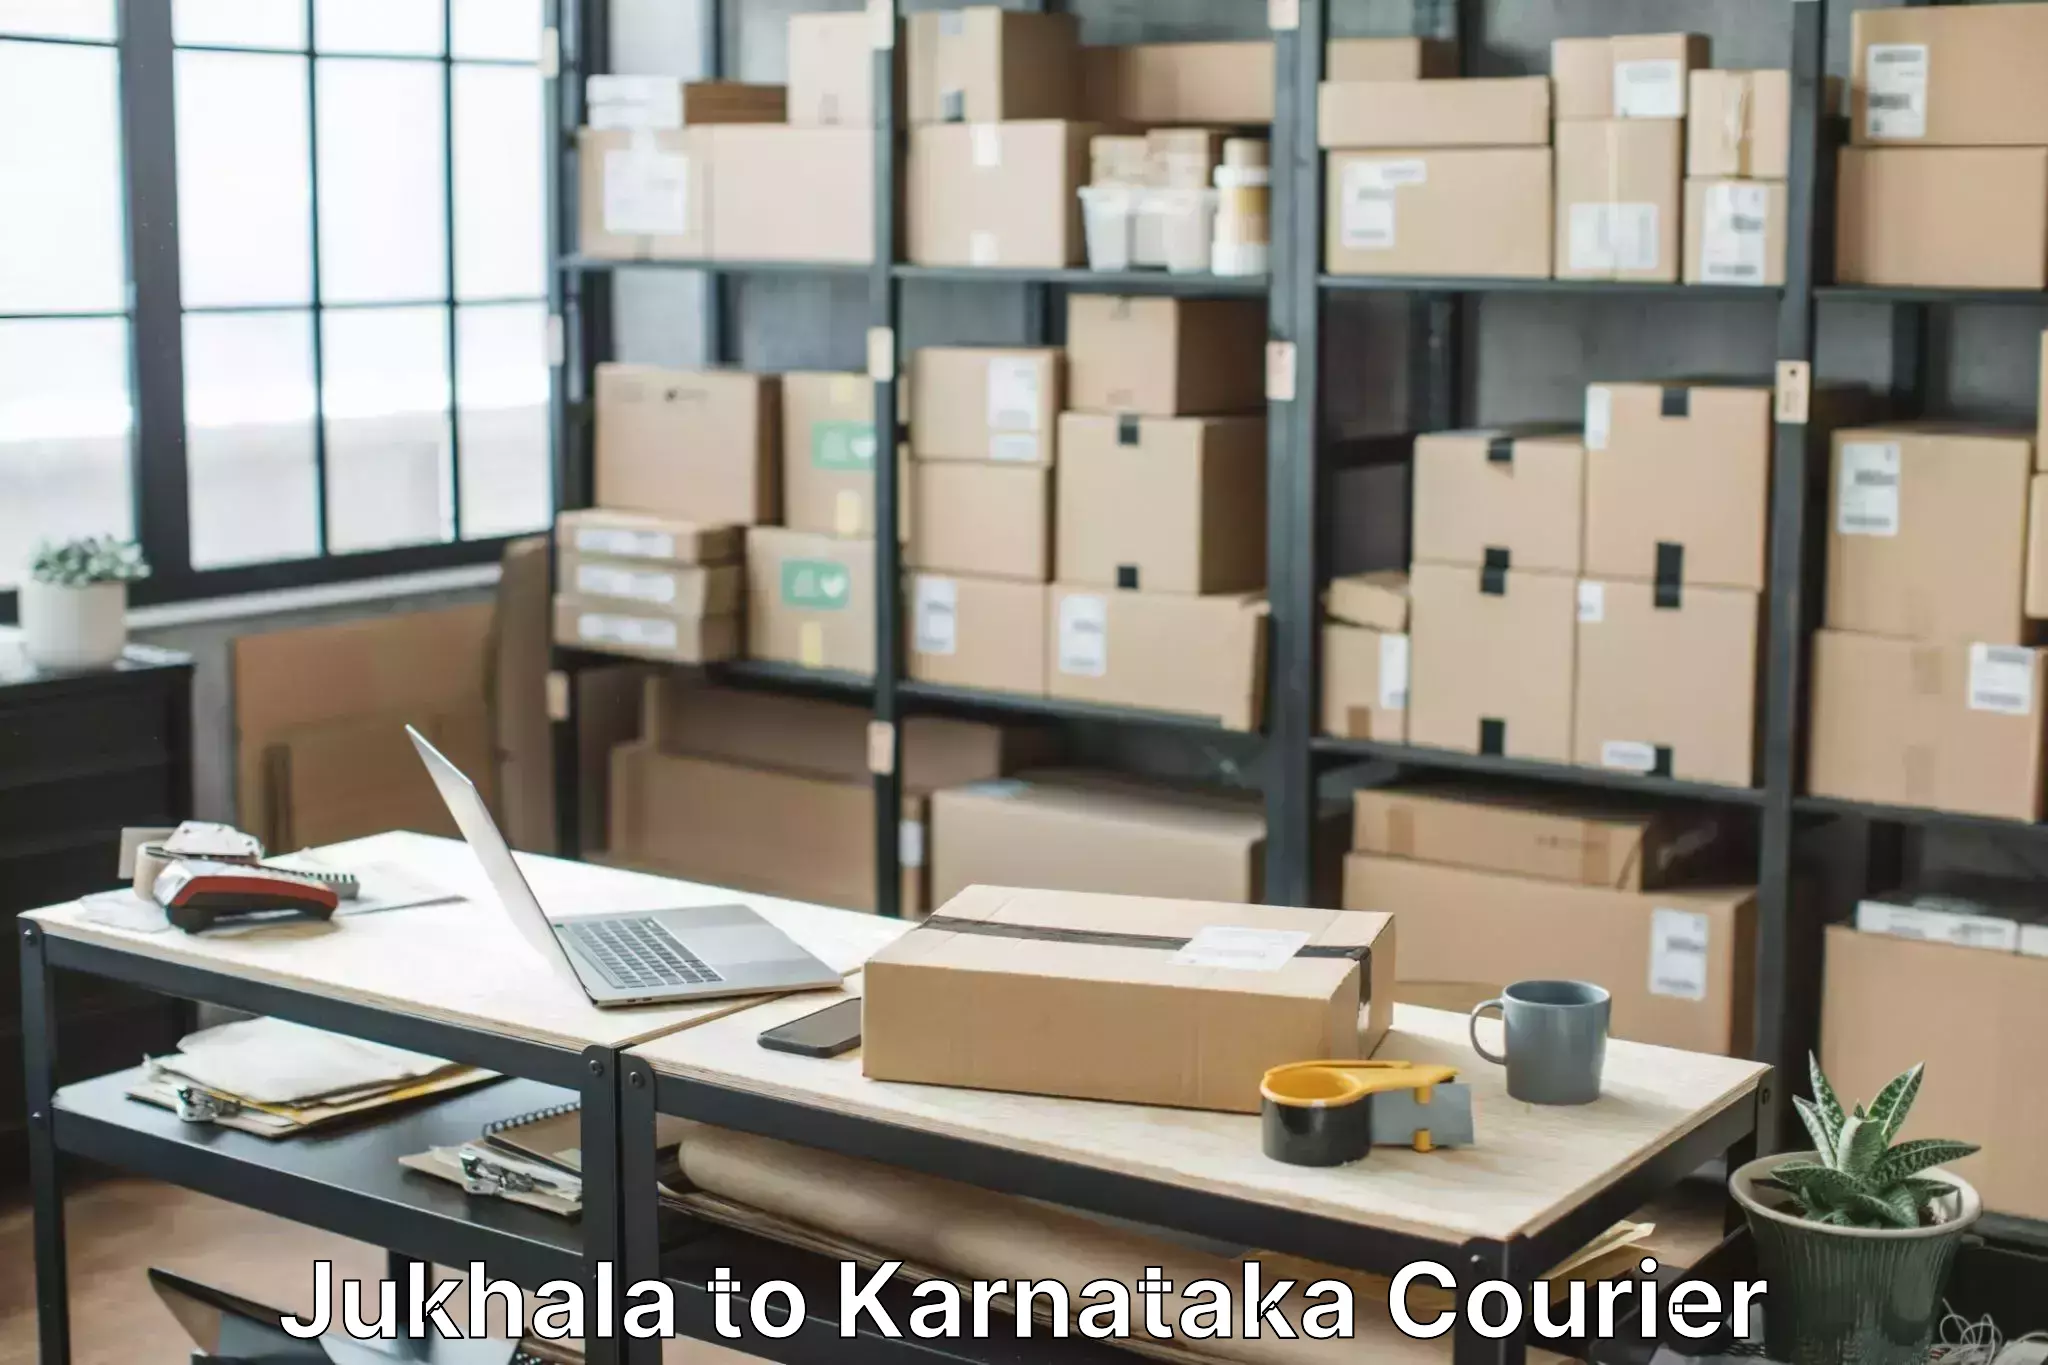 Seamless moving process Jukhala to Karnataka